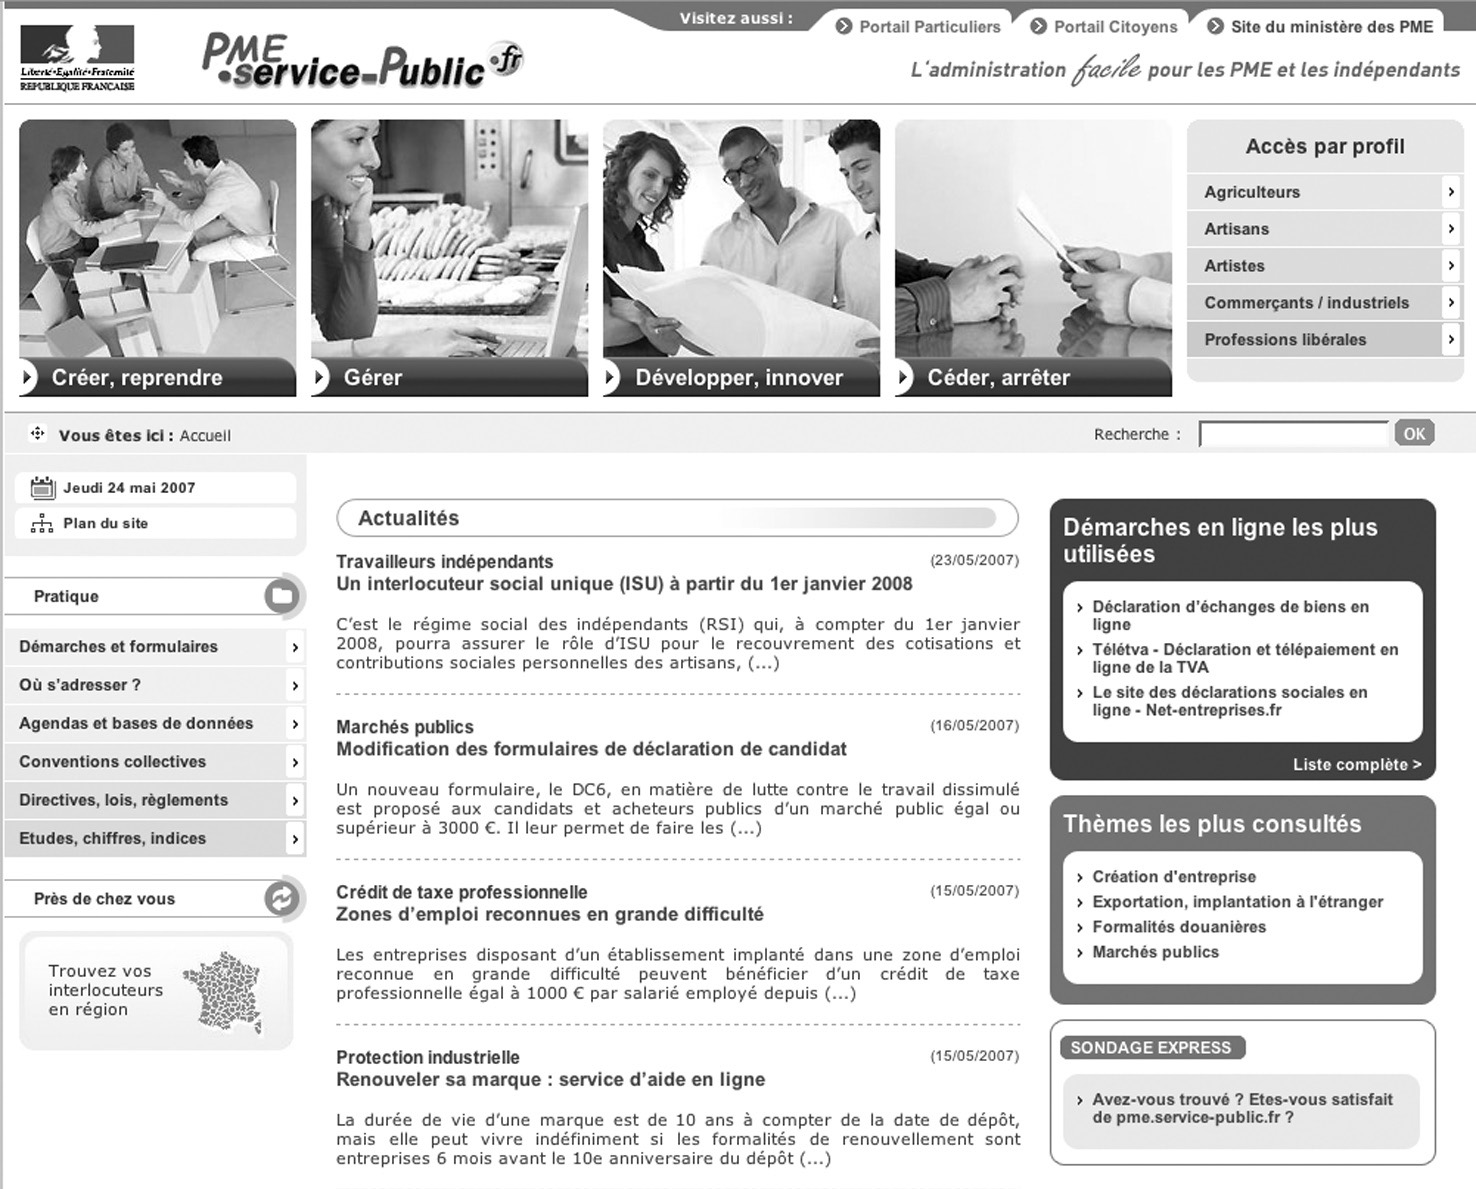 Chefs d entreprise, travailleurs indépendants : gagnez du temps et simplifiez vos démarches avec pme.service-public.fr!